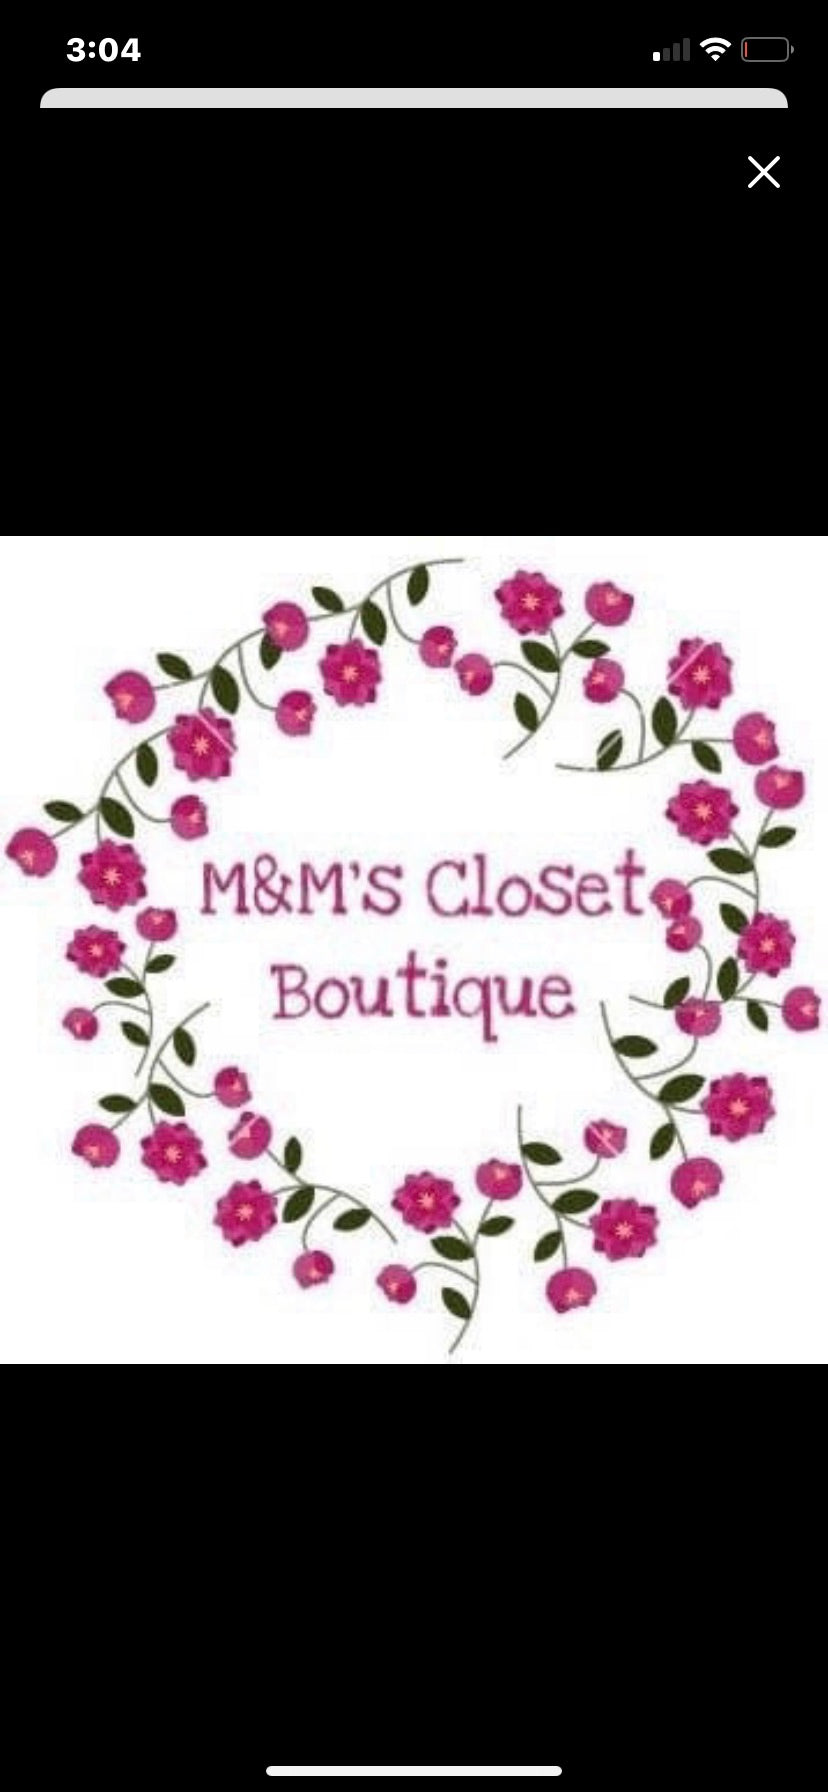 M&M's Closet Boutique